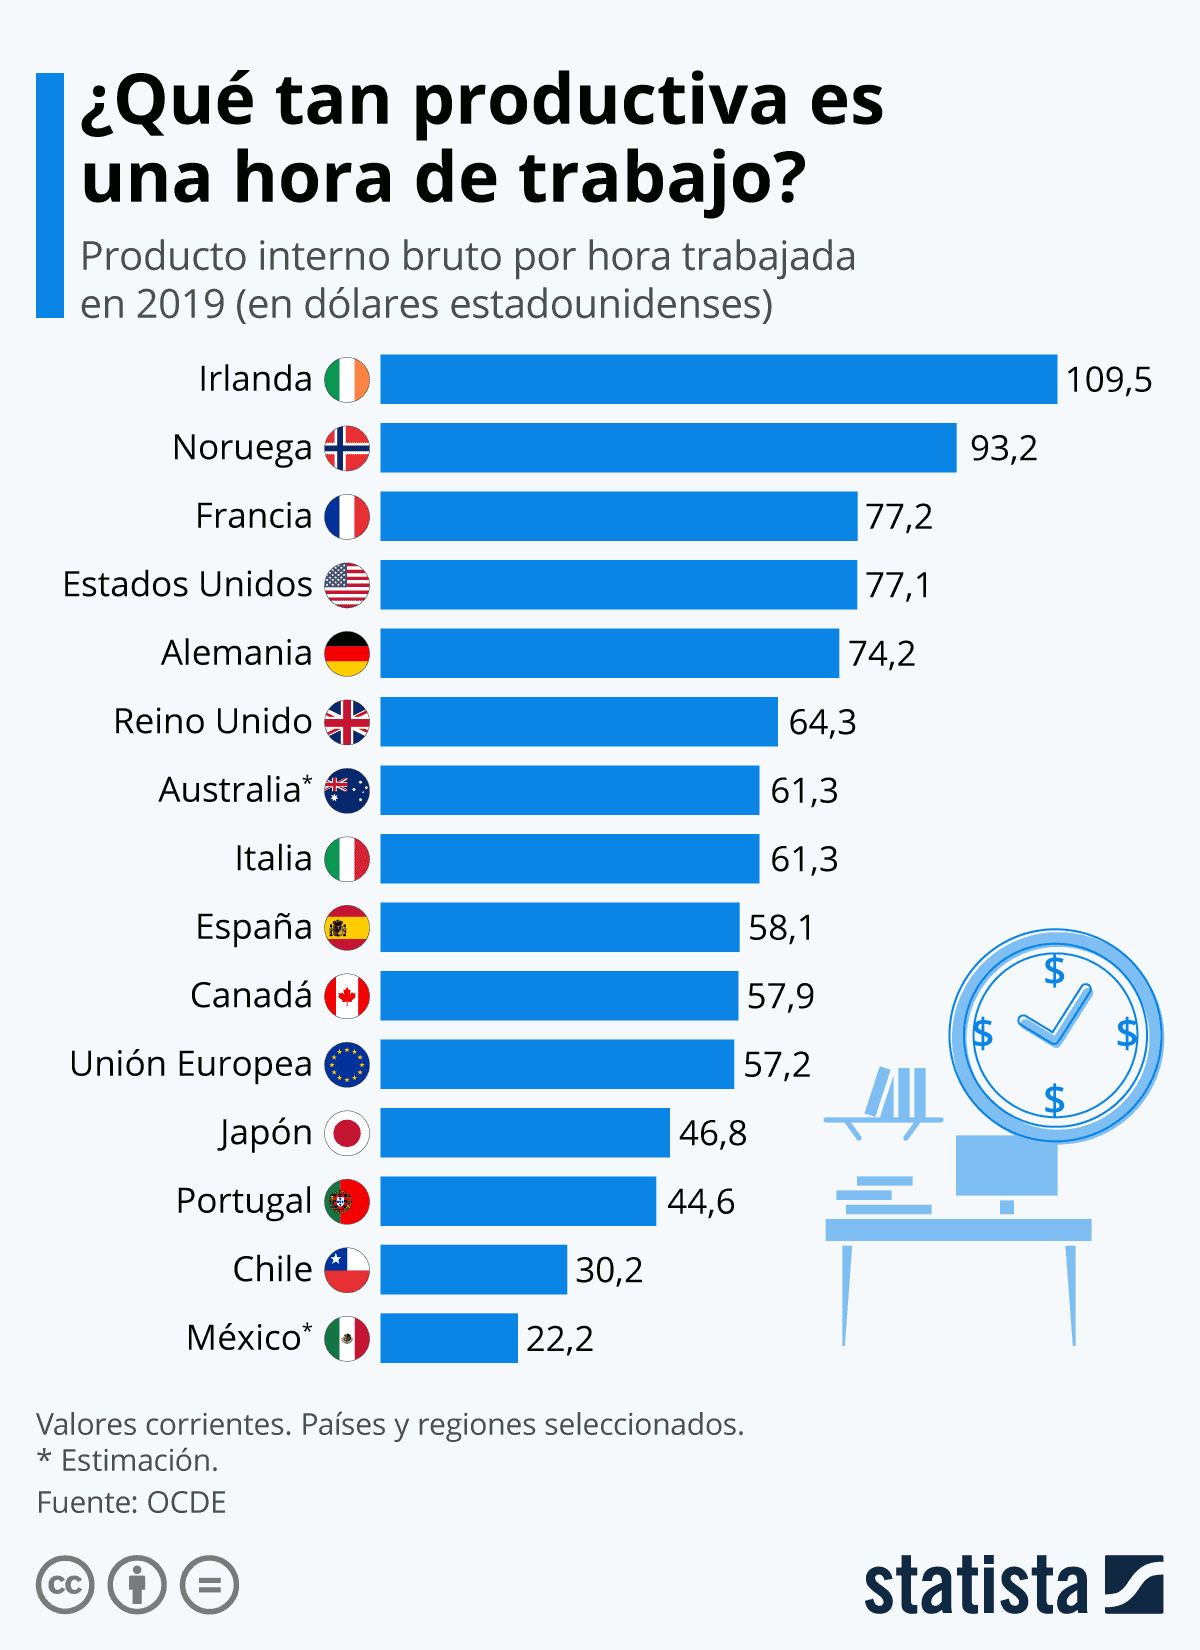 ¿Cómo es de productiva una hora de trabajo en los países de la OCDE